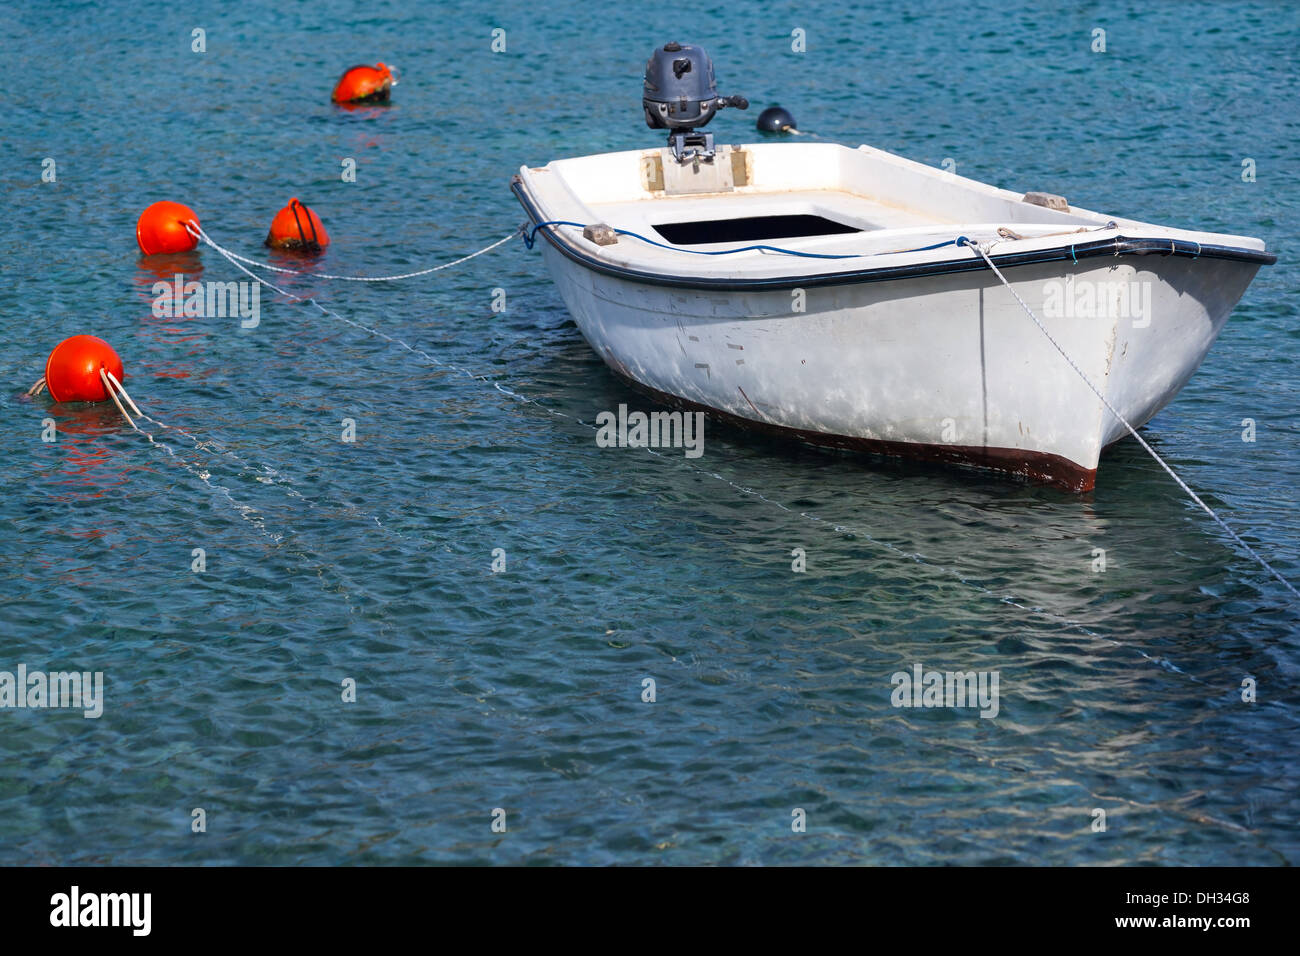 Bateau de pêche en bois blanc flotte amarré dans l'eau de mer Adriatique, le Monténégro Banque D'Images